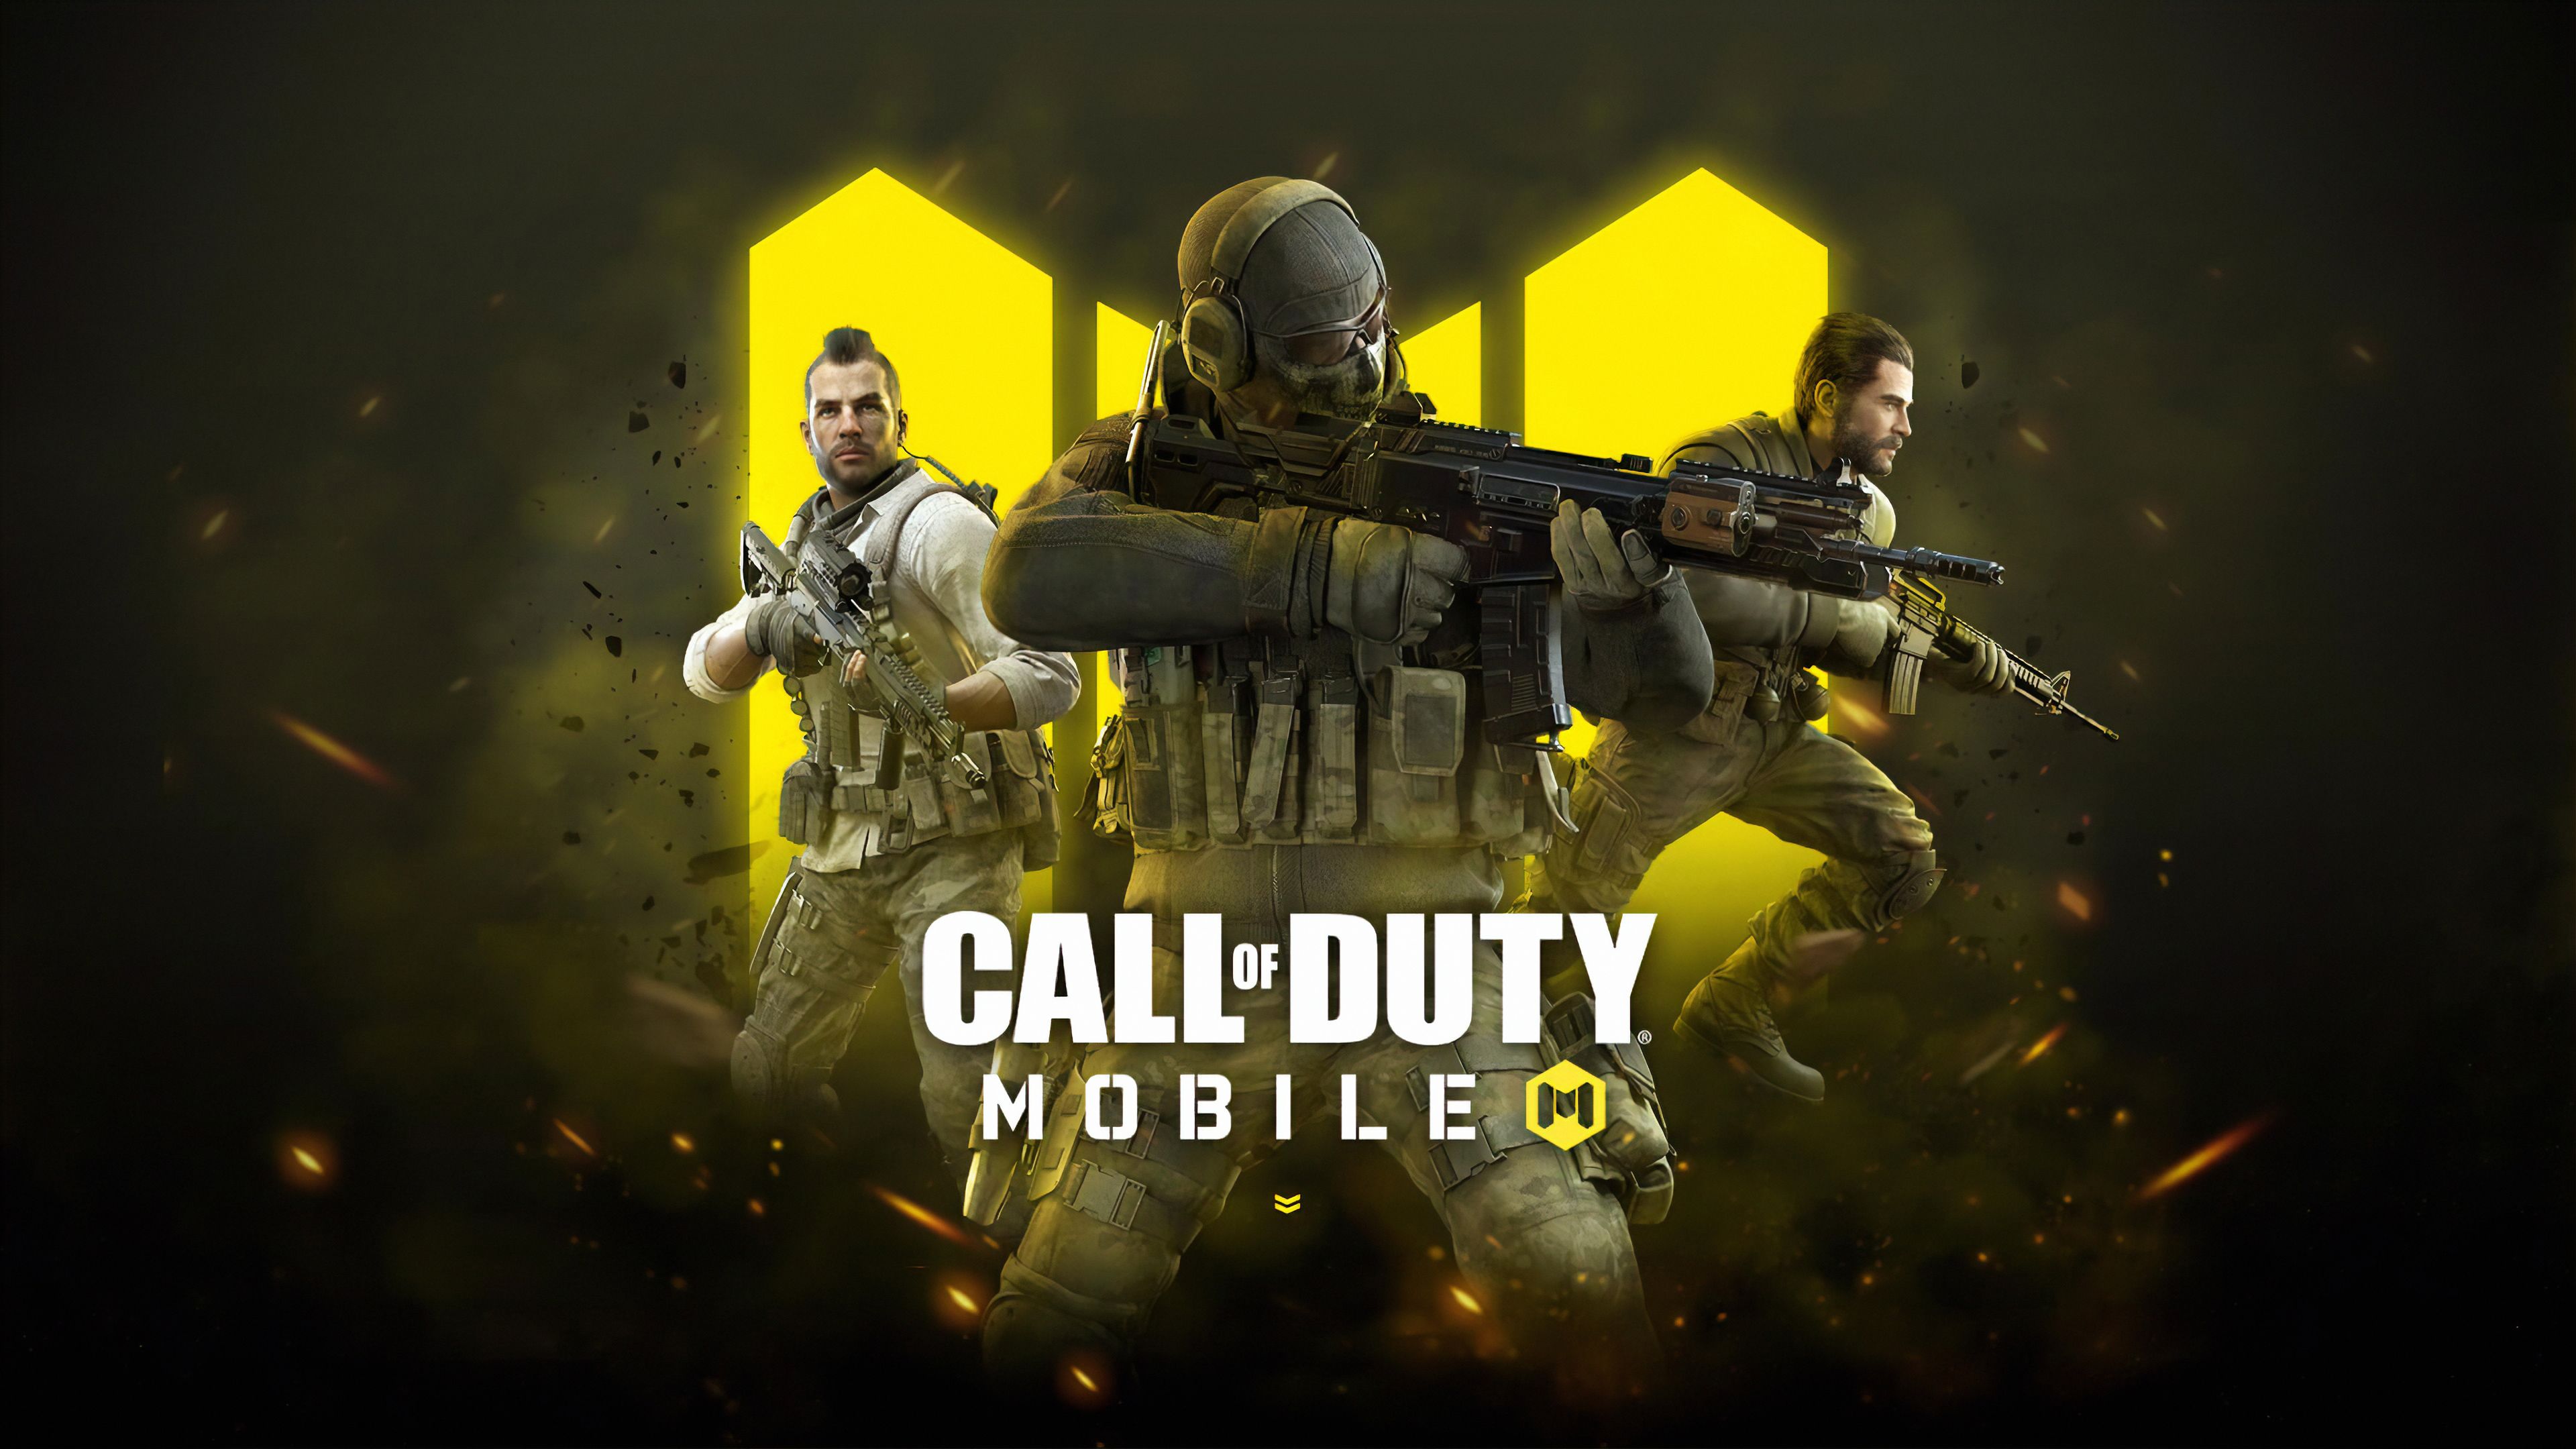 Call of Duty Mobile 4K Wallpaper #3.1043